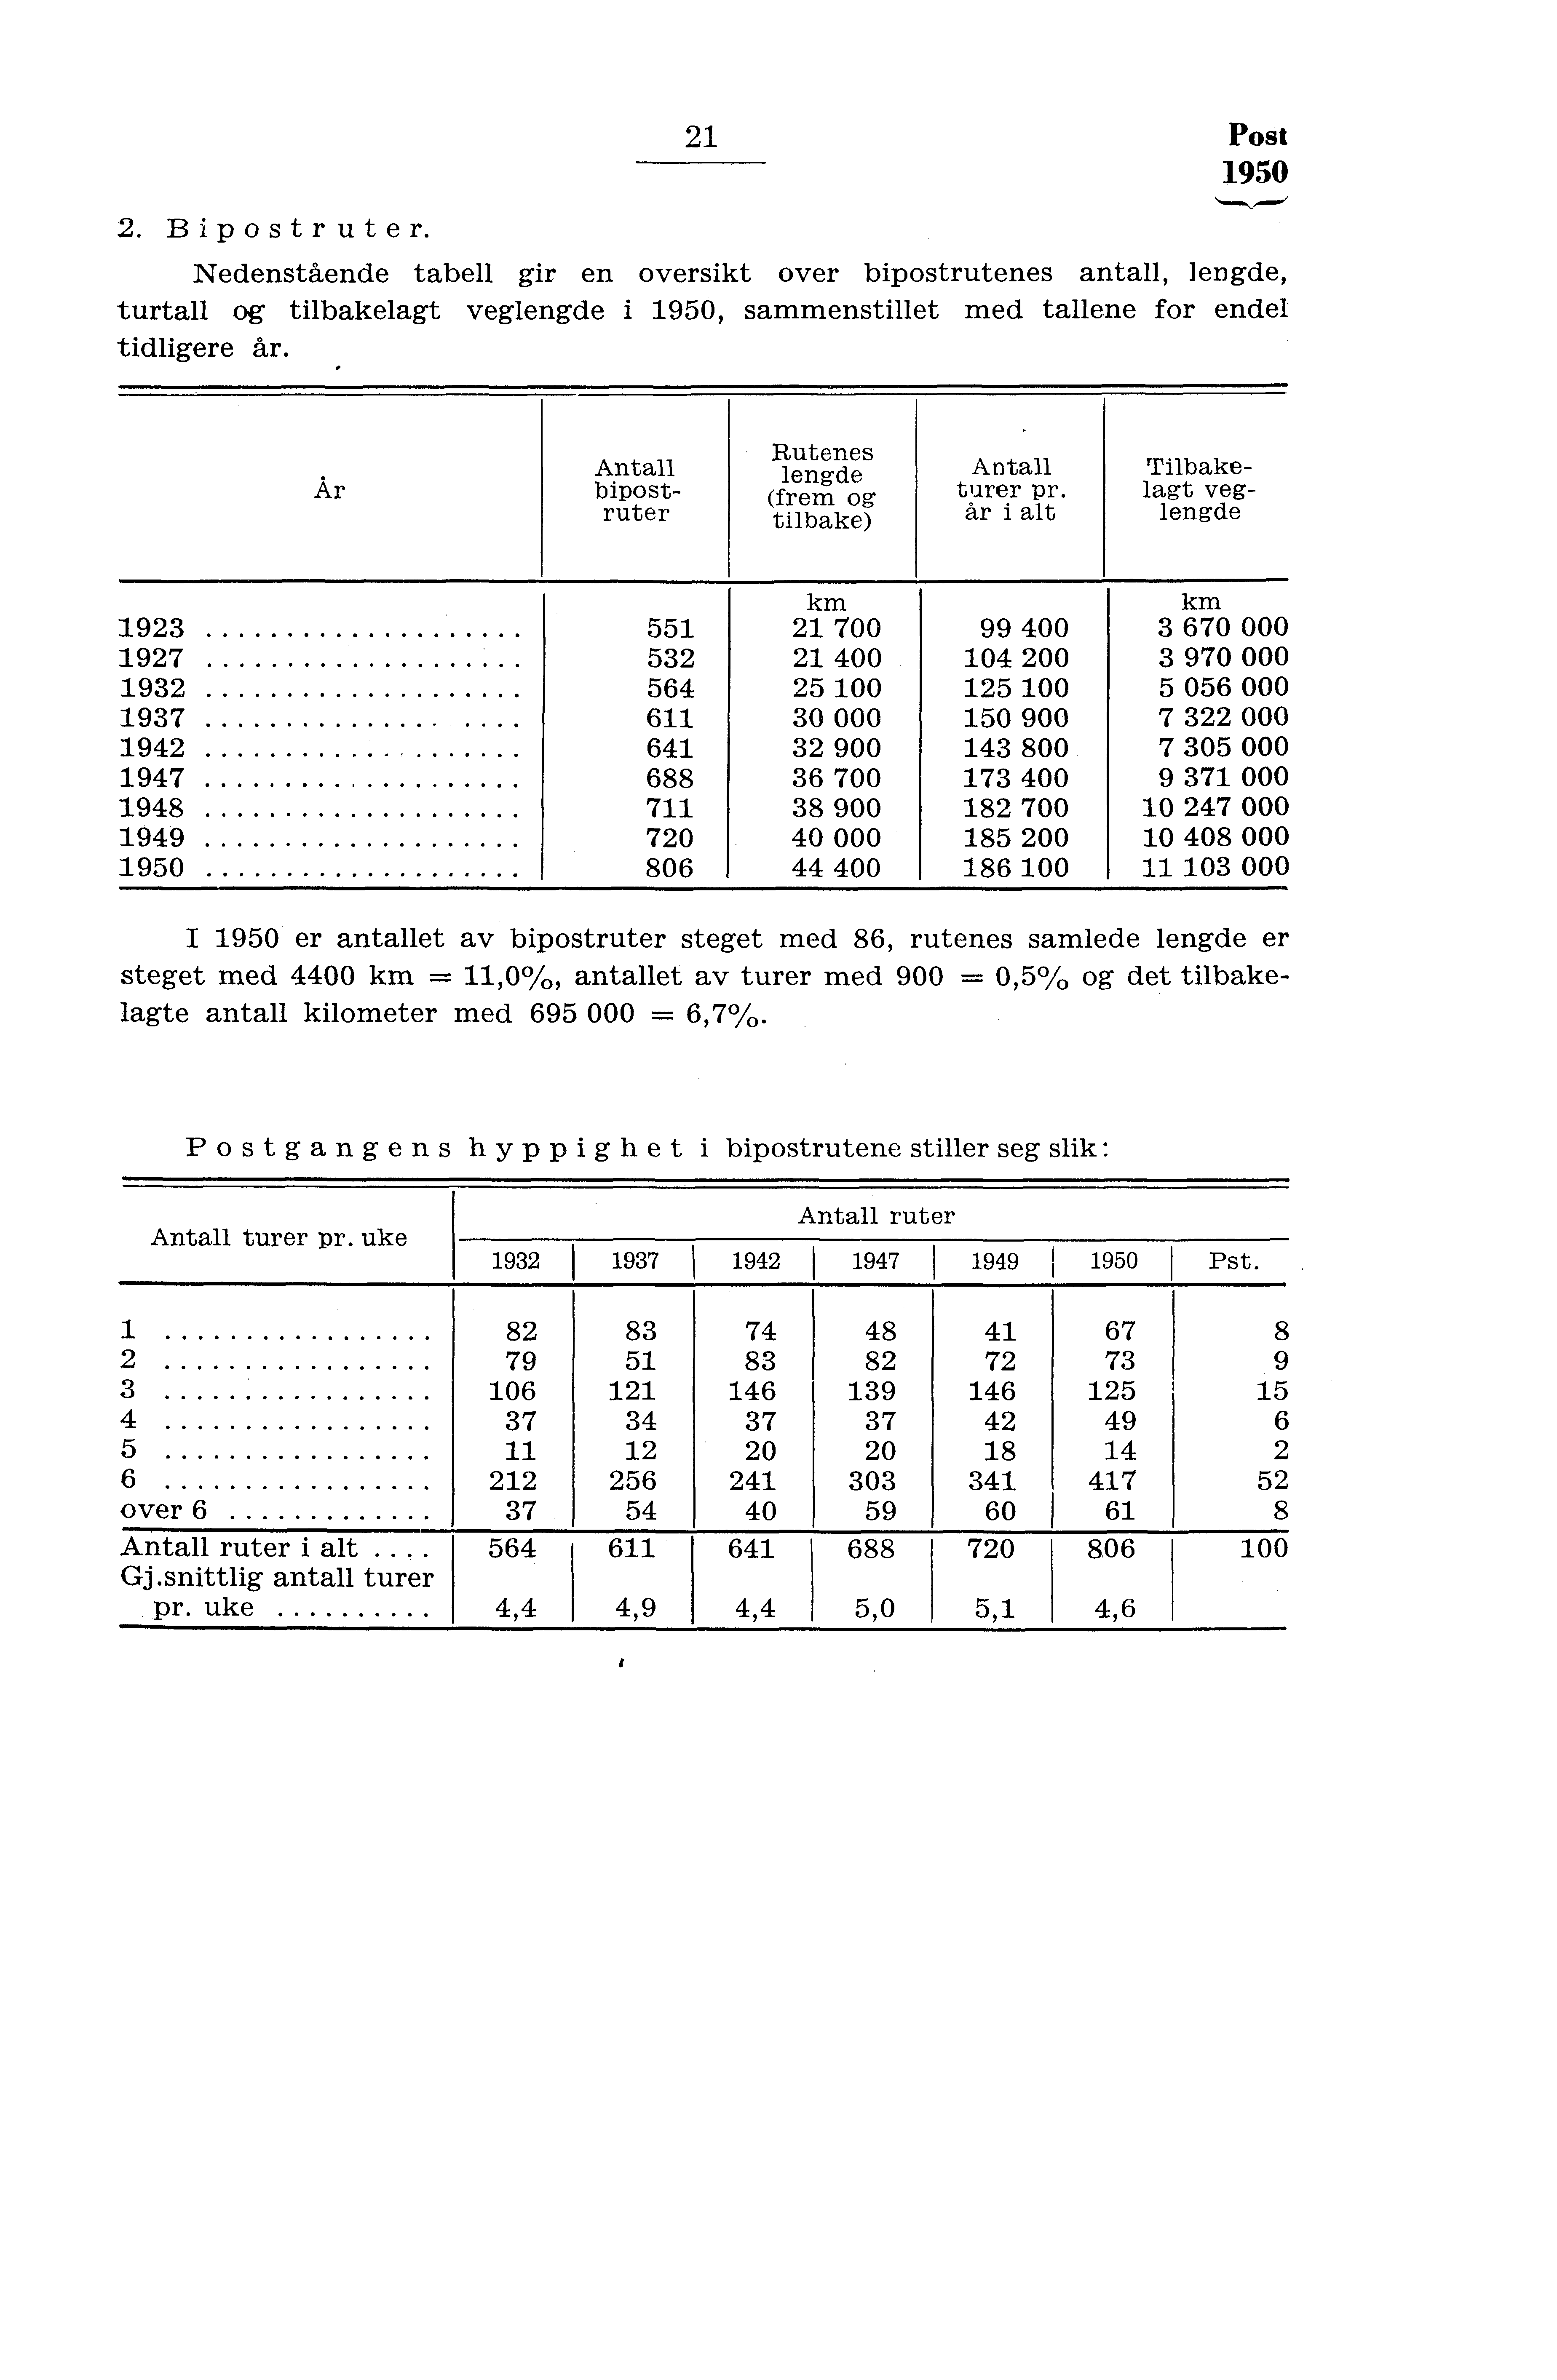 . Bipostruter. Post 950 Nedenstående tabell gir en oversikt over bipostrutenes antall, lengde, turtall og tilbakelagt veglengde i 950, sammenstillet med tallene for endel tidligere år.